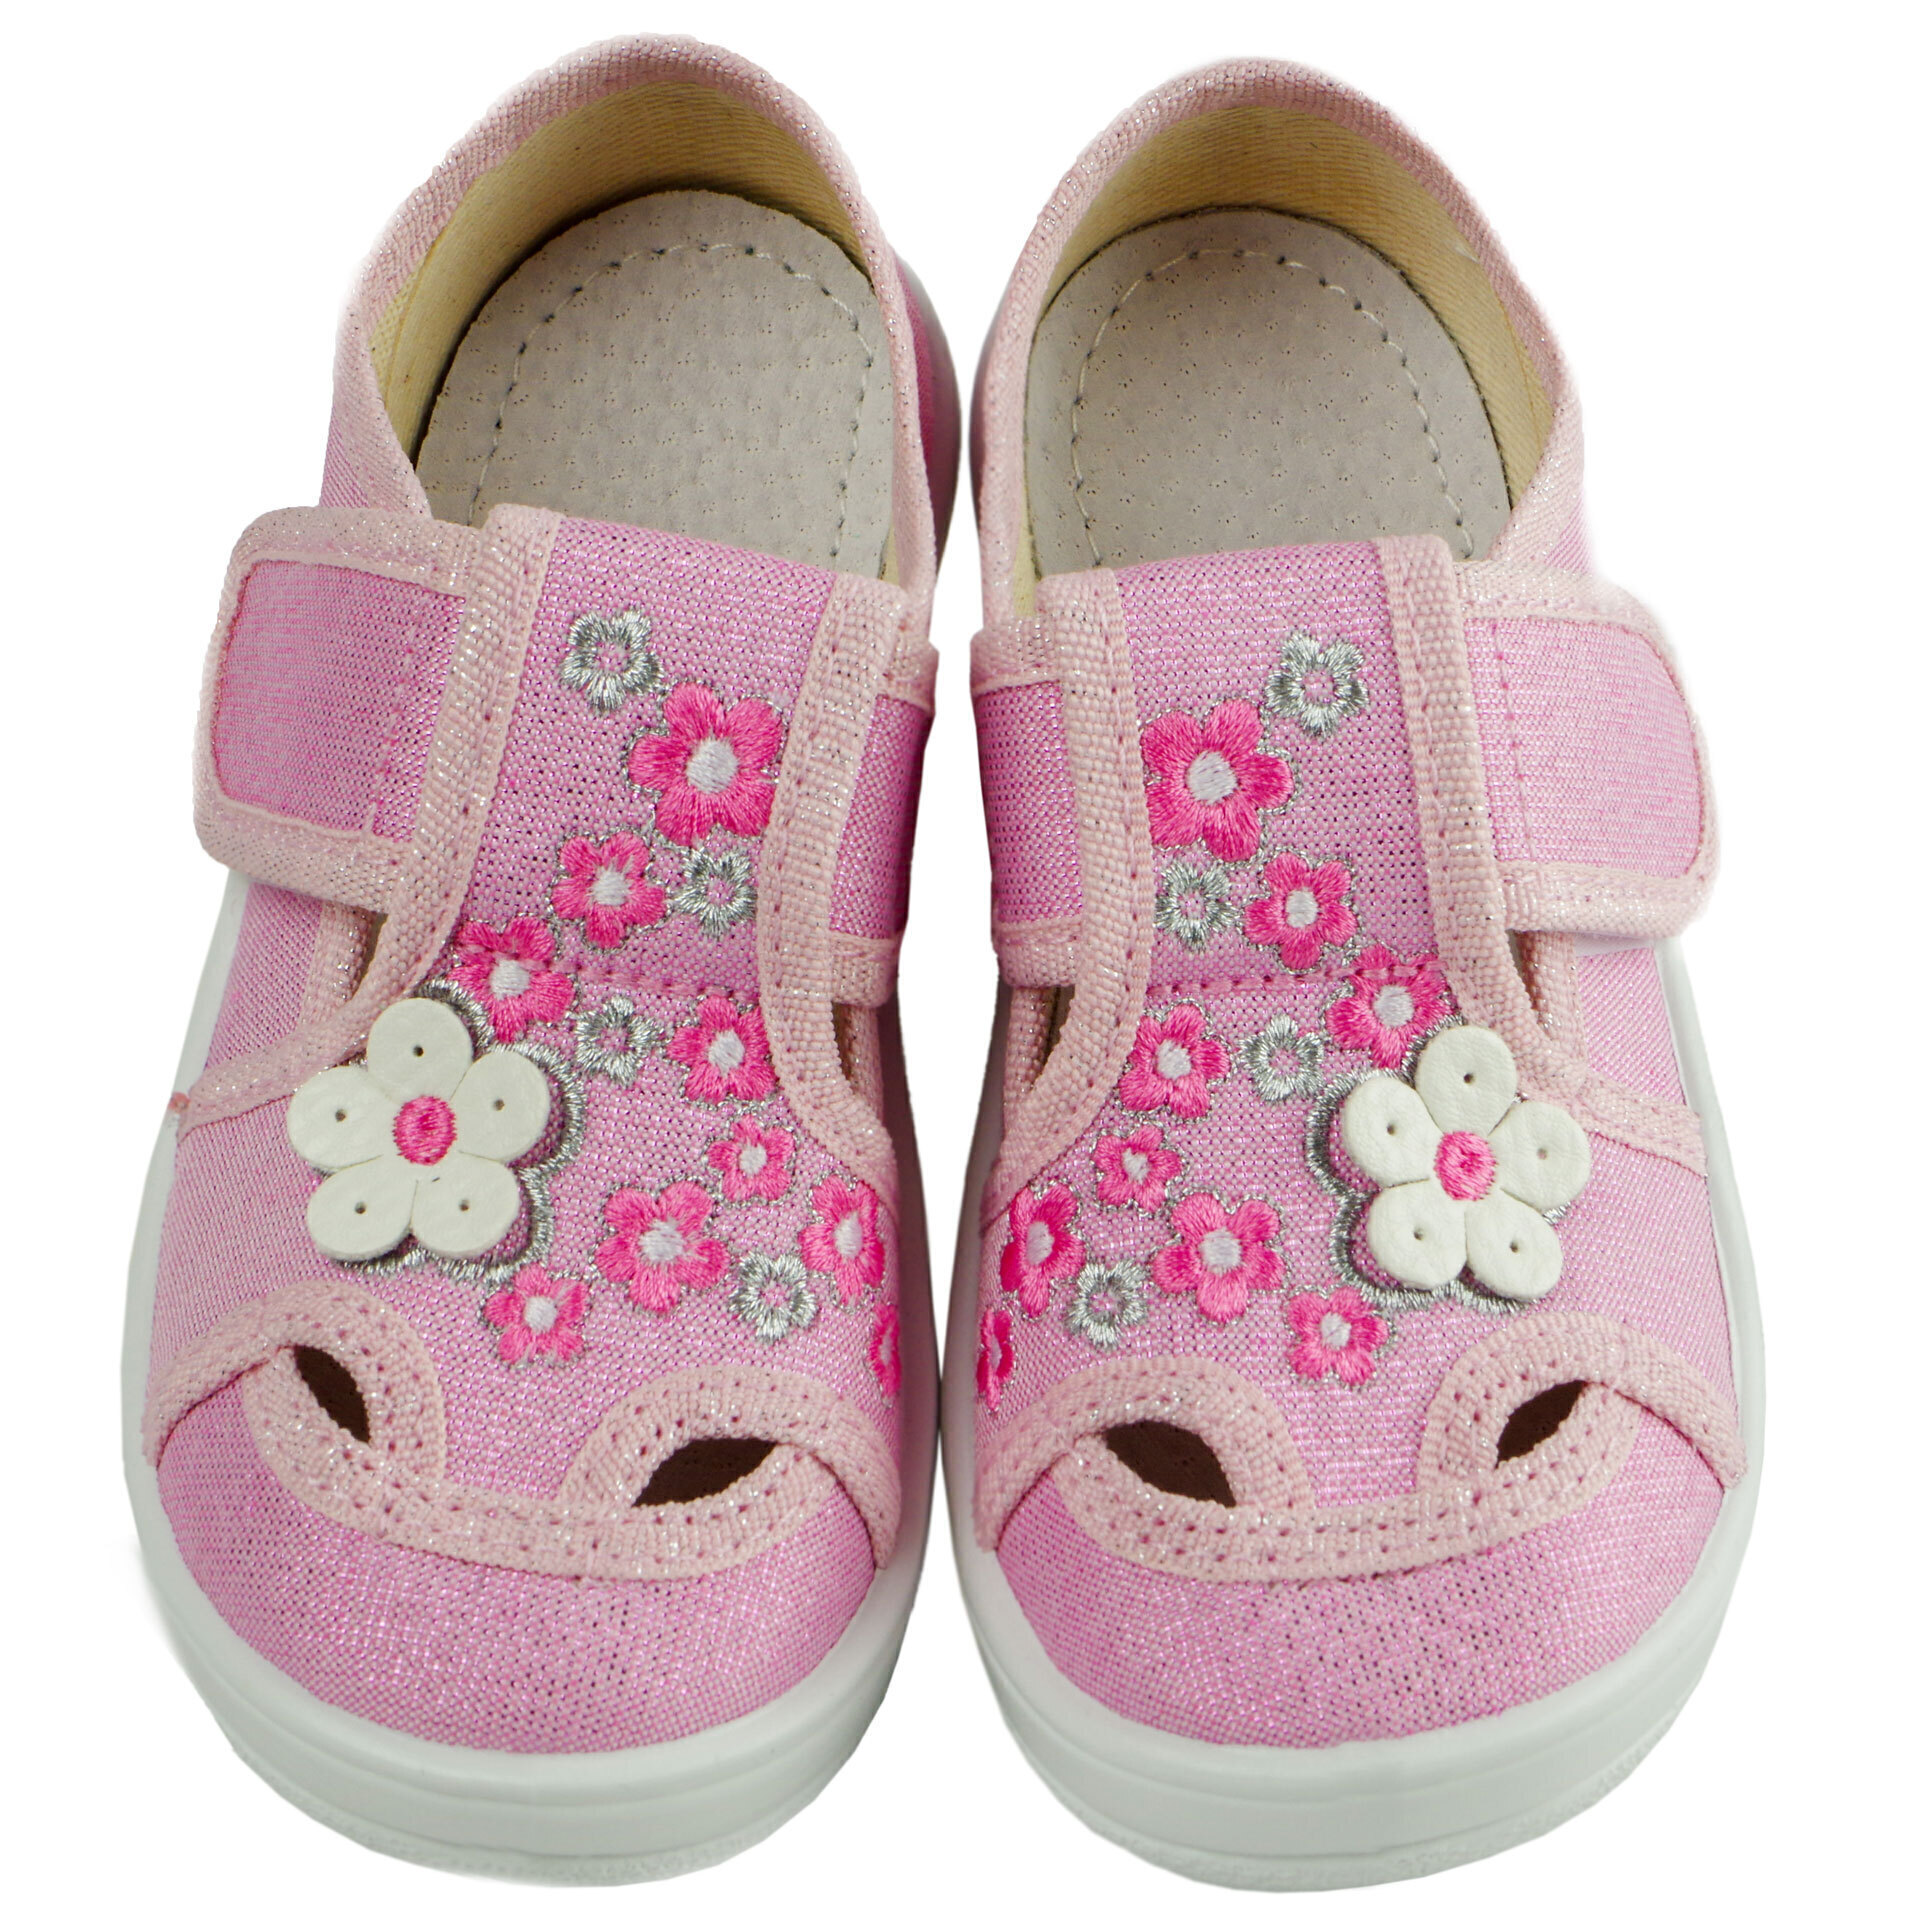 Текстильная обувь для девочек Тапочки Мила (2039) цвет Розовый 24-30 размеры – Sole Kids. Фото 3